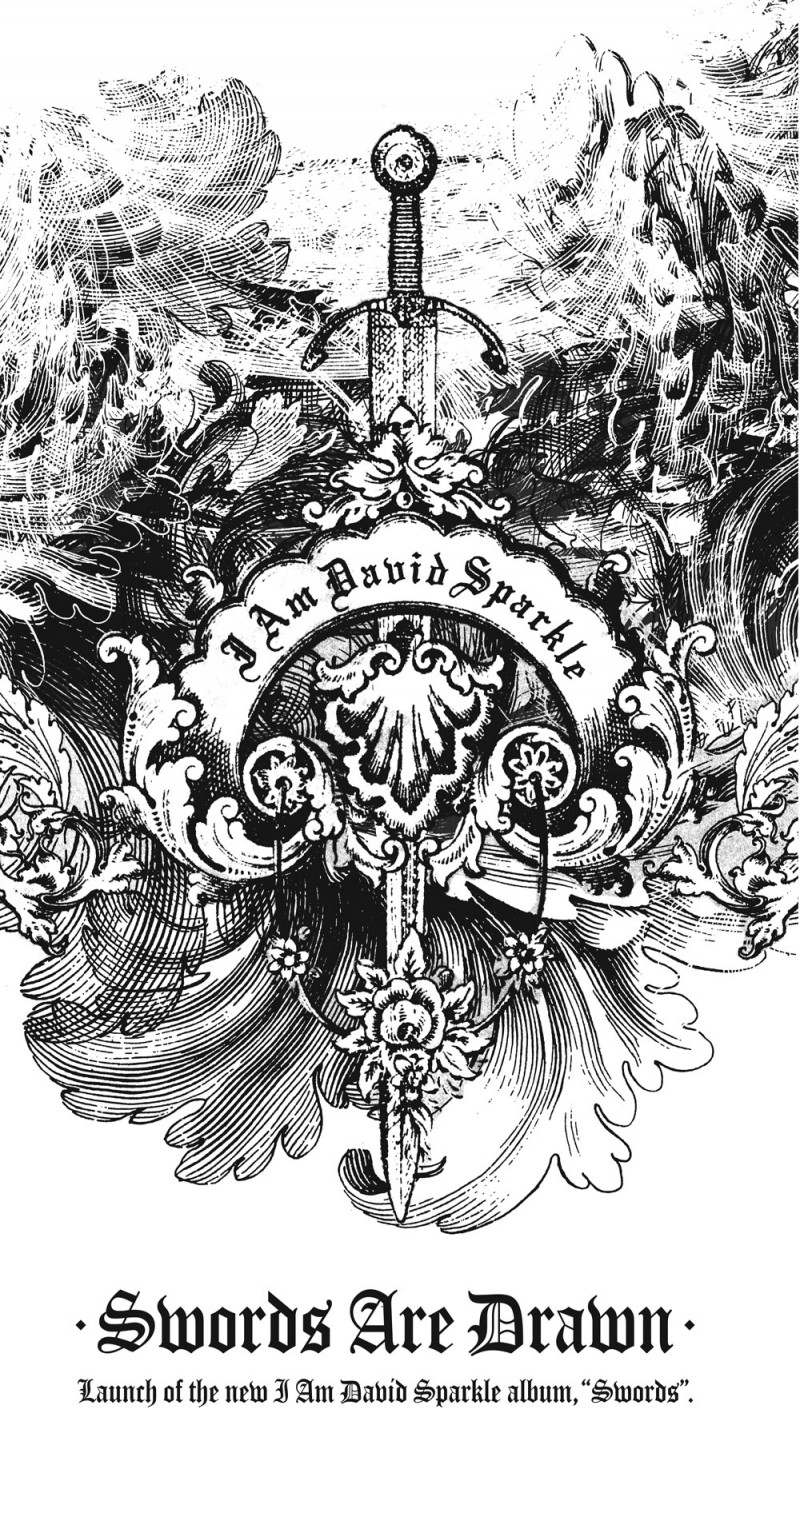 I Am David Sparkle – ‘Swords Are Drawn’ album release show